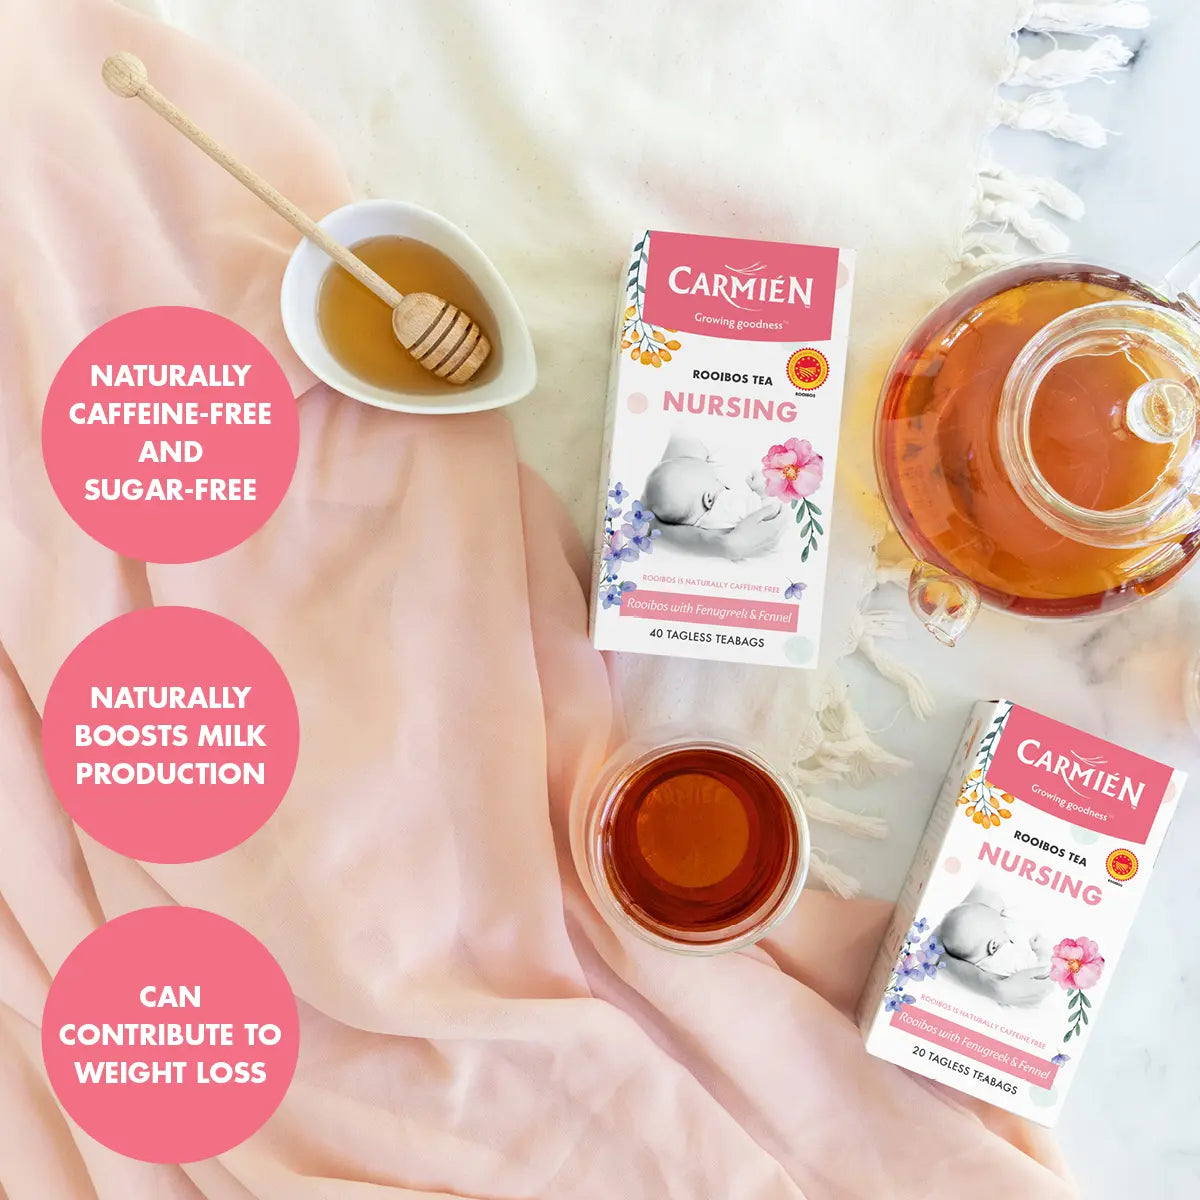 Organic Rooibos Tea (For Nursing)